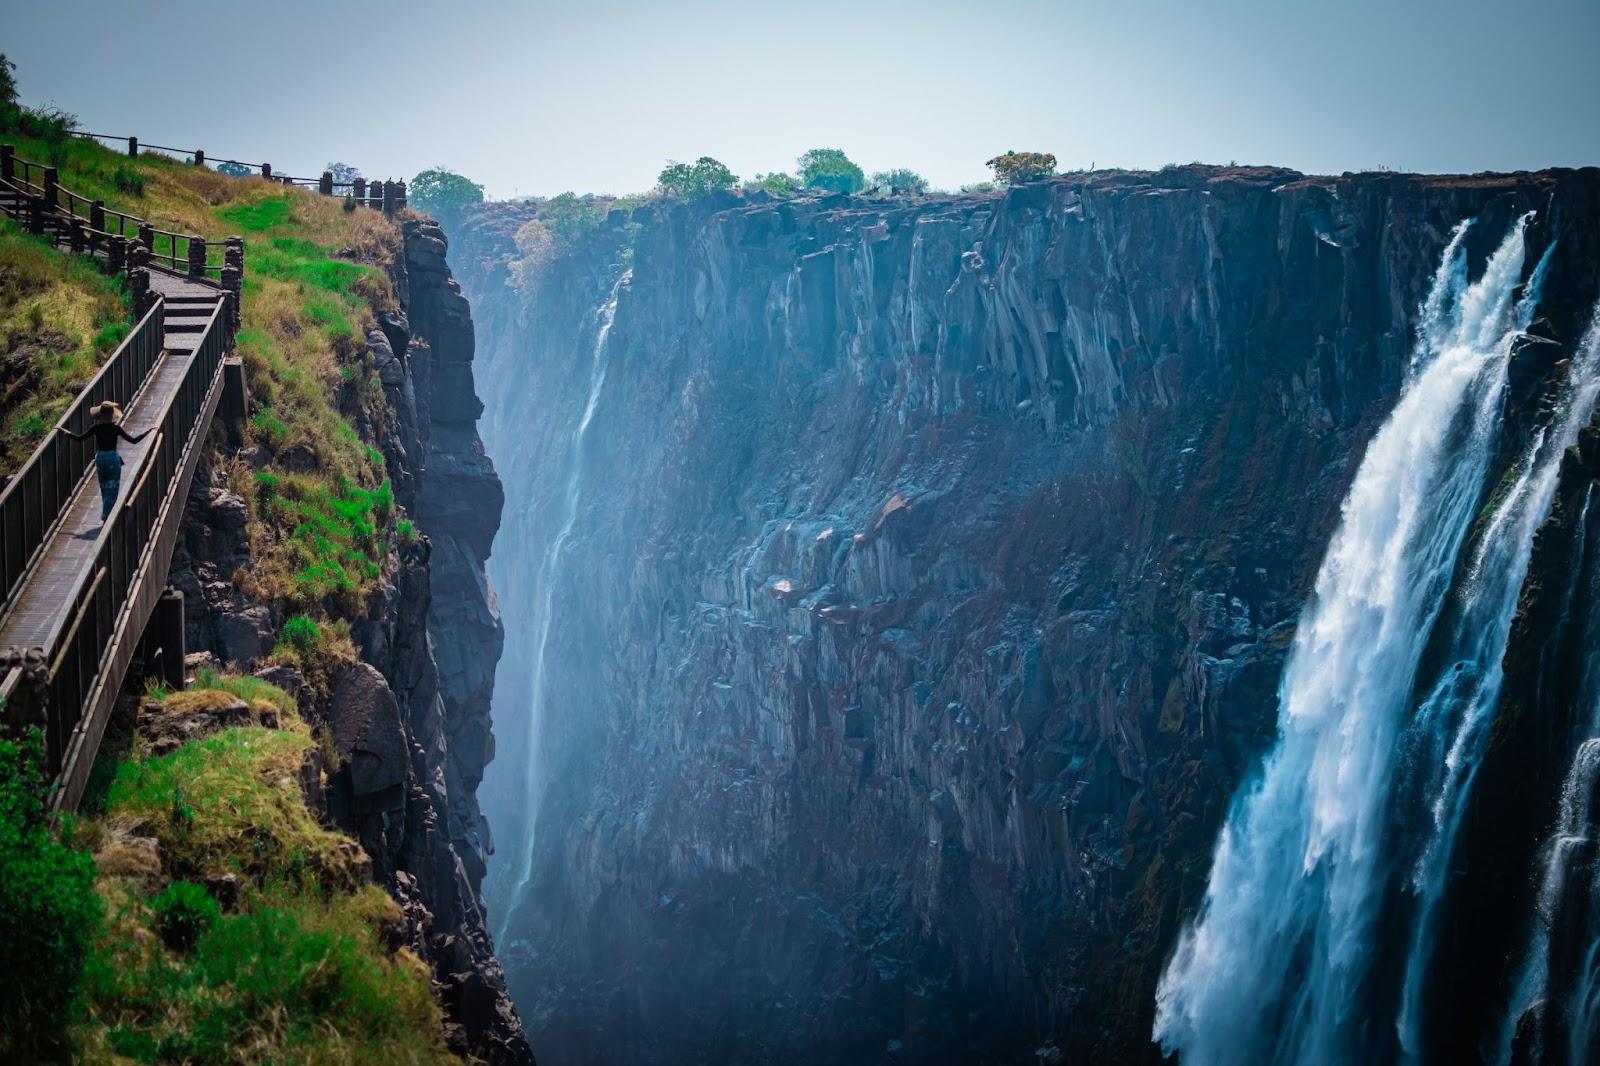 Victoria Falls in Livingstone, Zambia